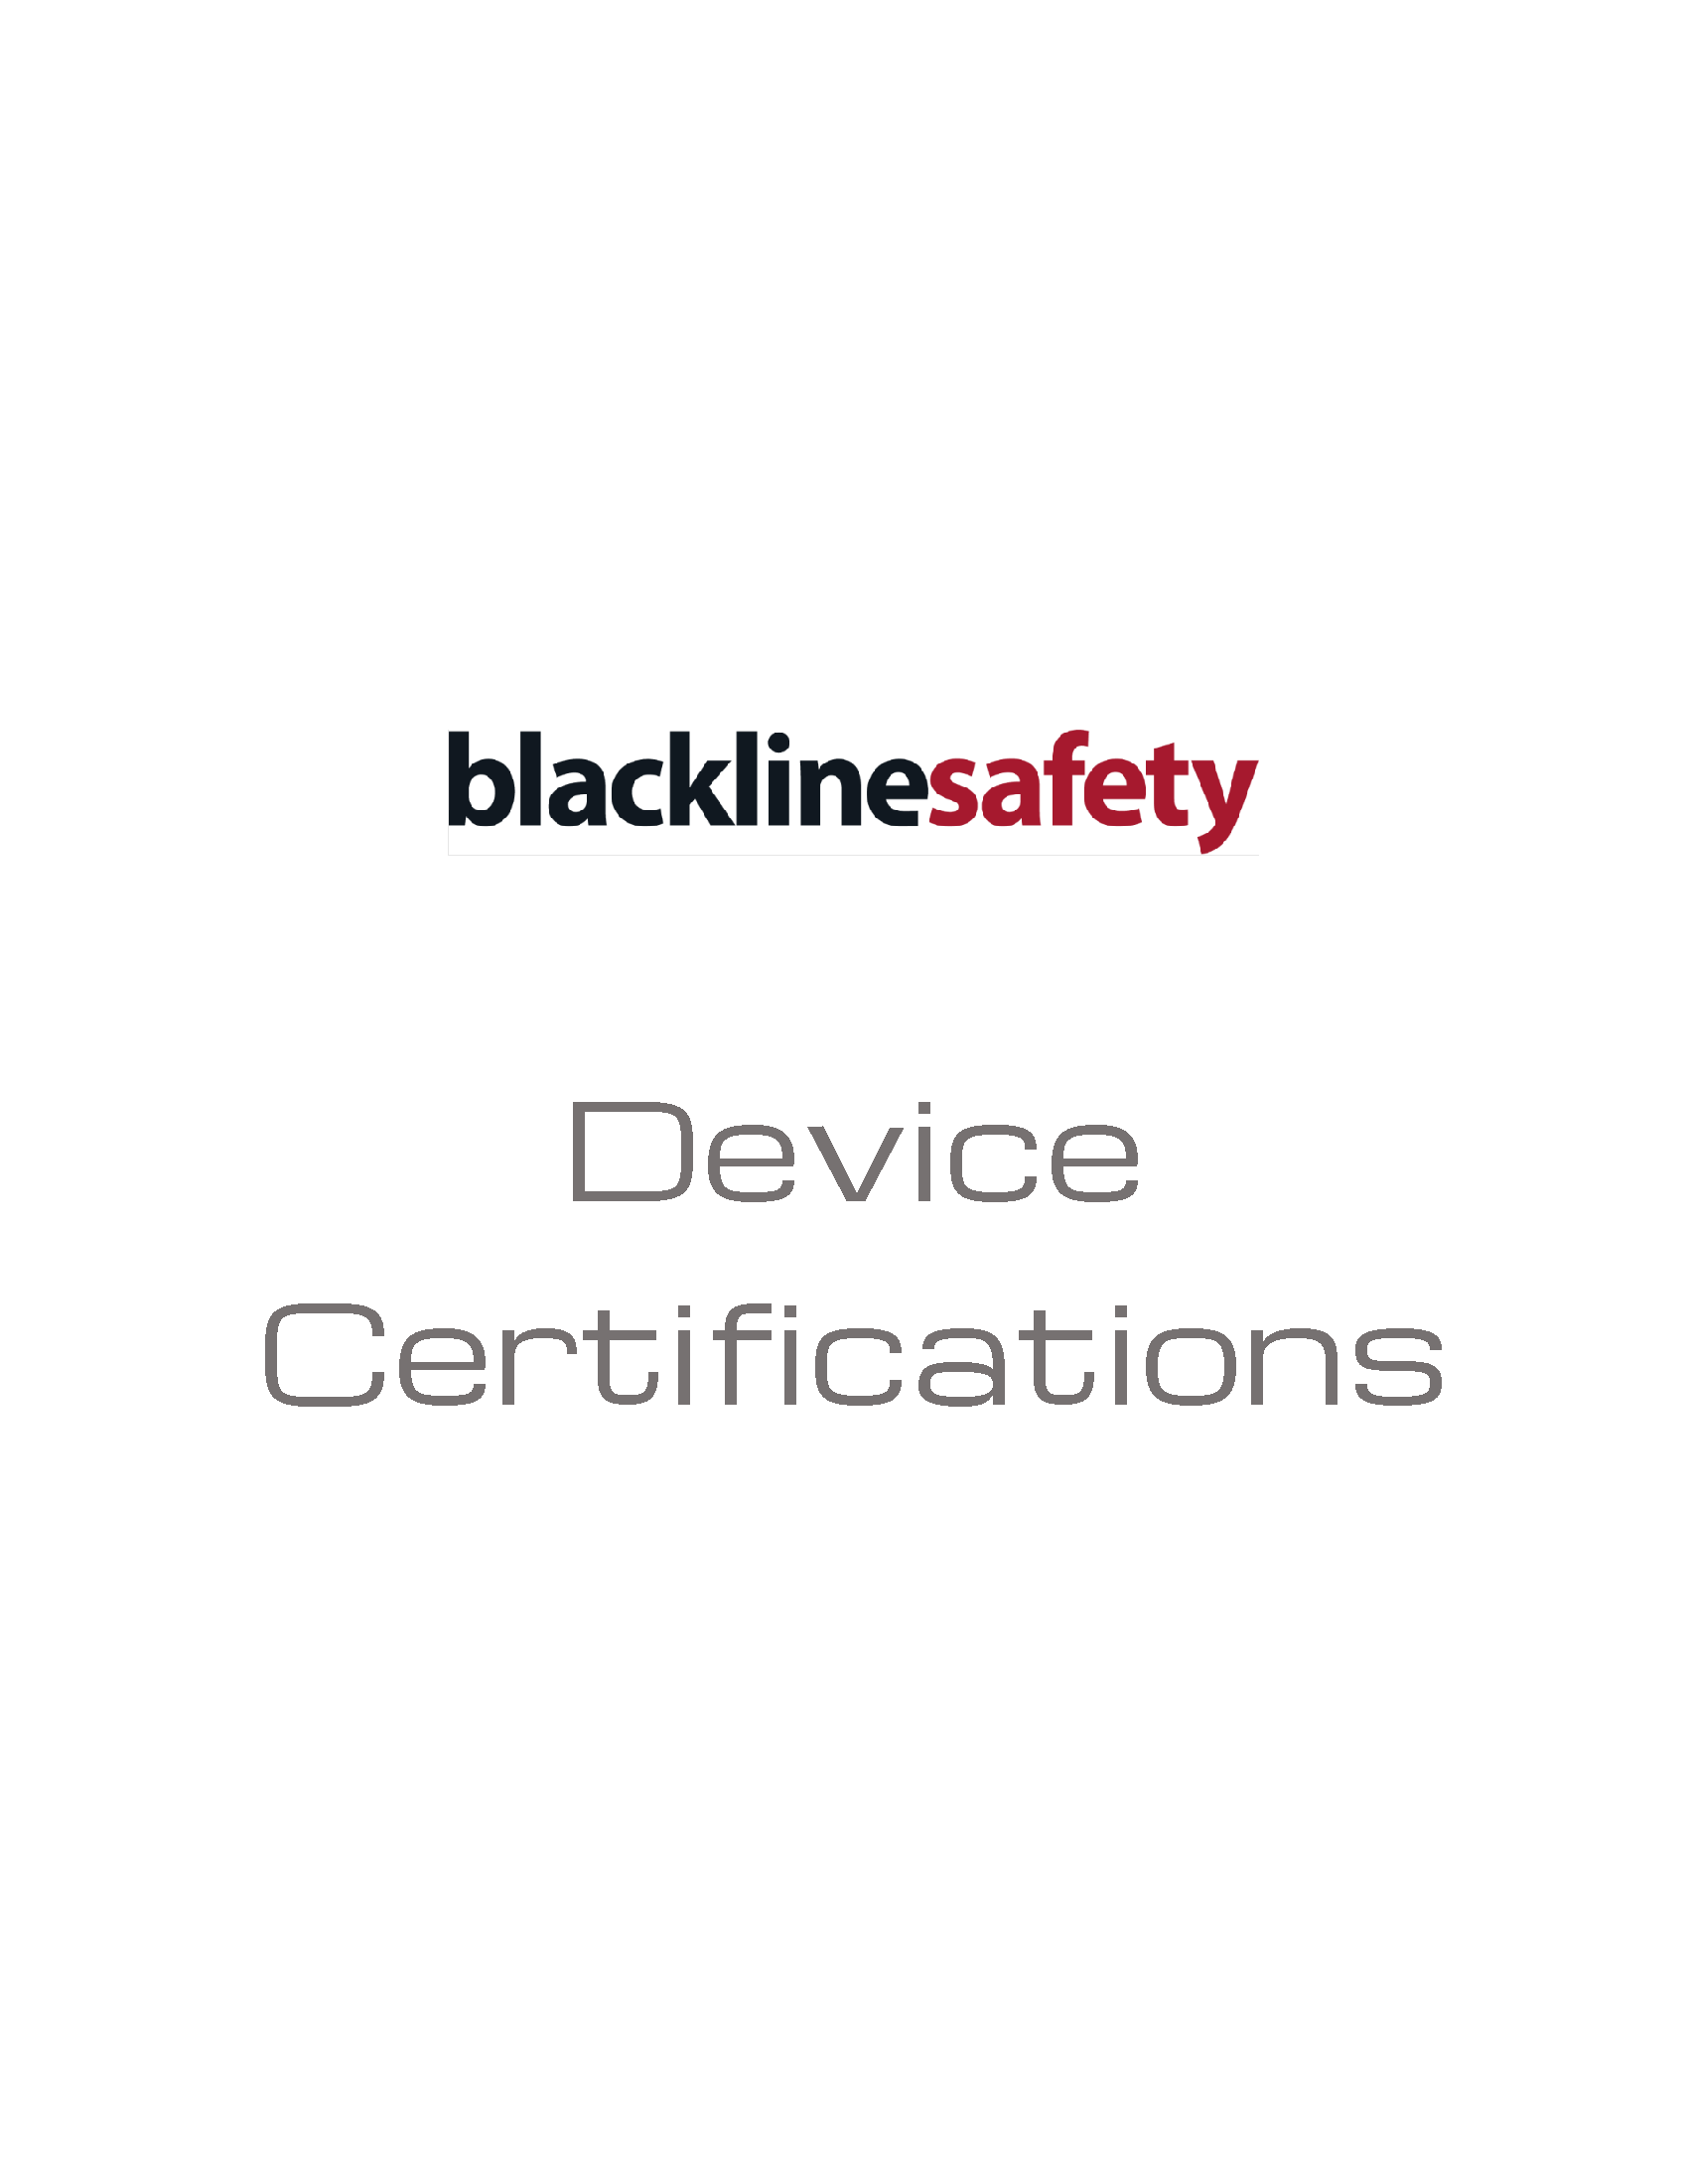 Imagem das certificações de dispositivos